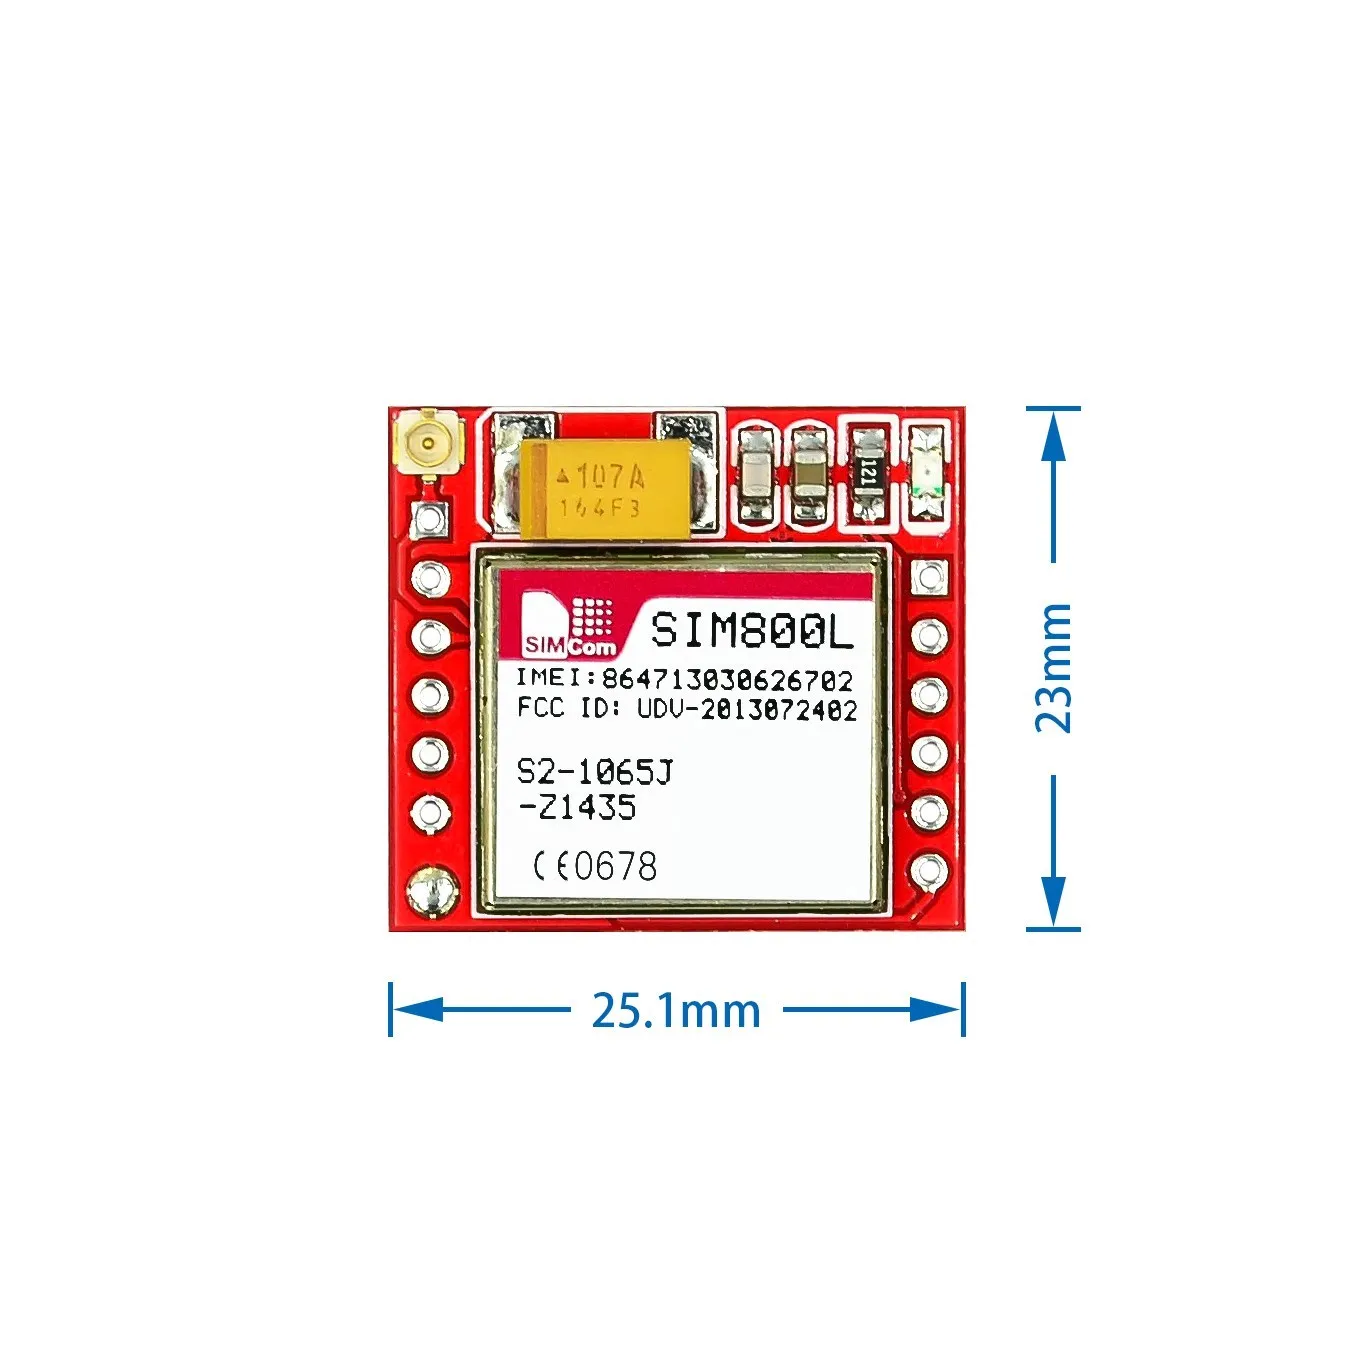 

10pcs Gsm Module Smallest SIM800L GPRS GSM Module MicroSIM Card Core BOard Quad-band TTL Serial Port For Arduino